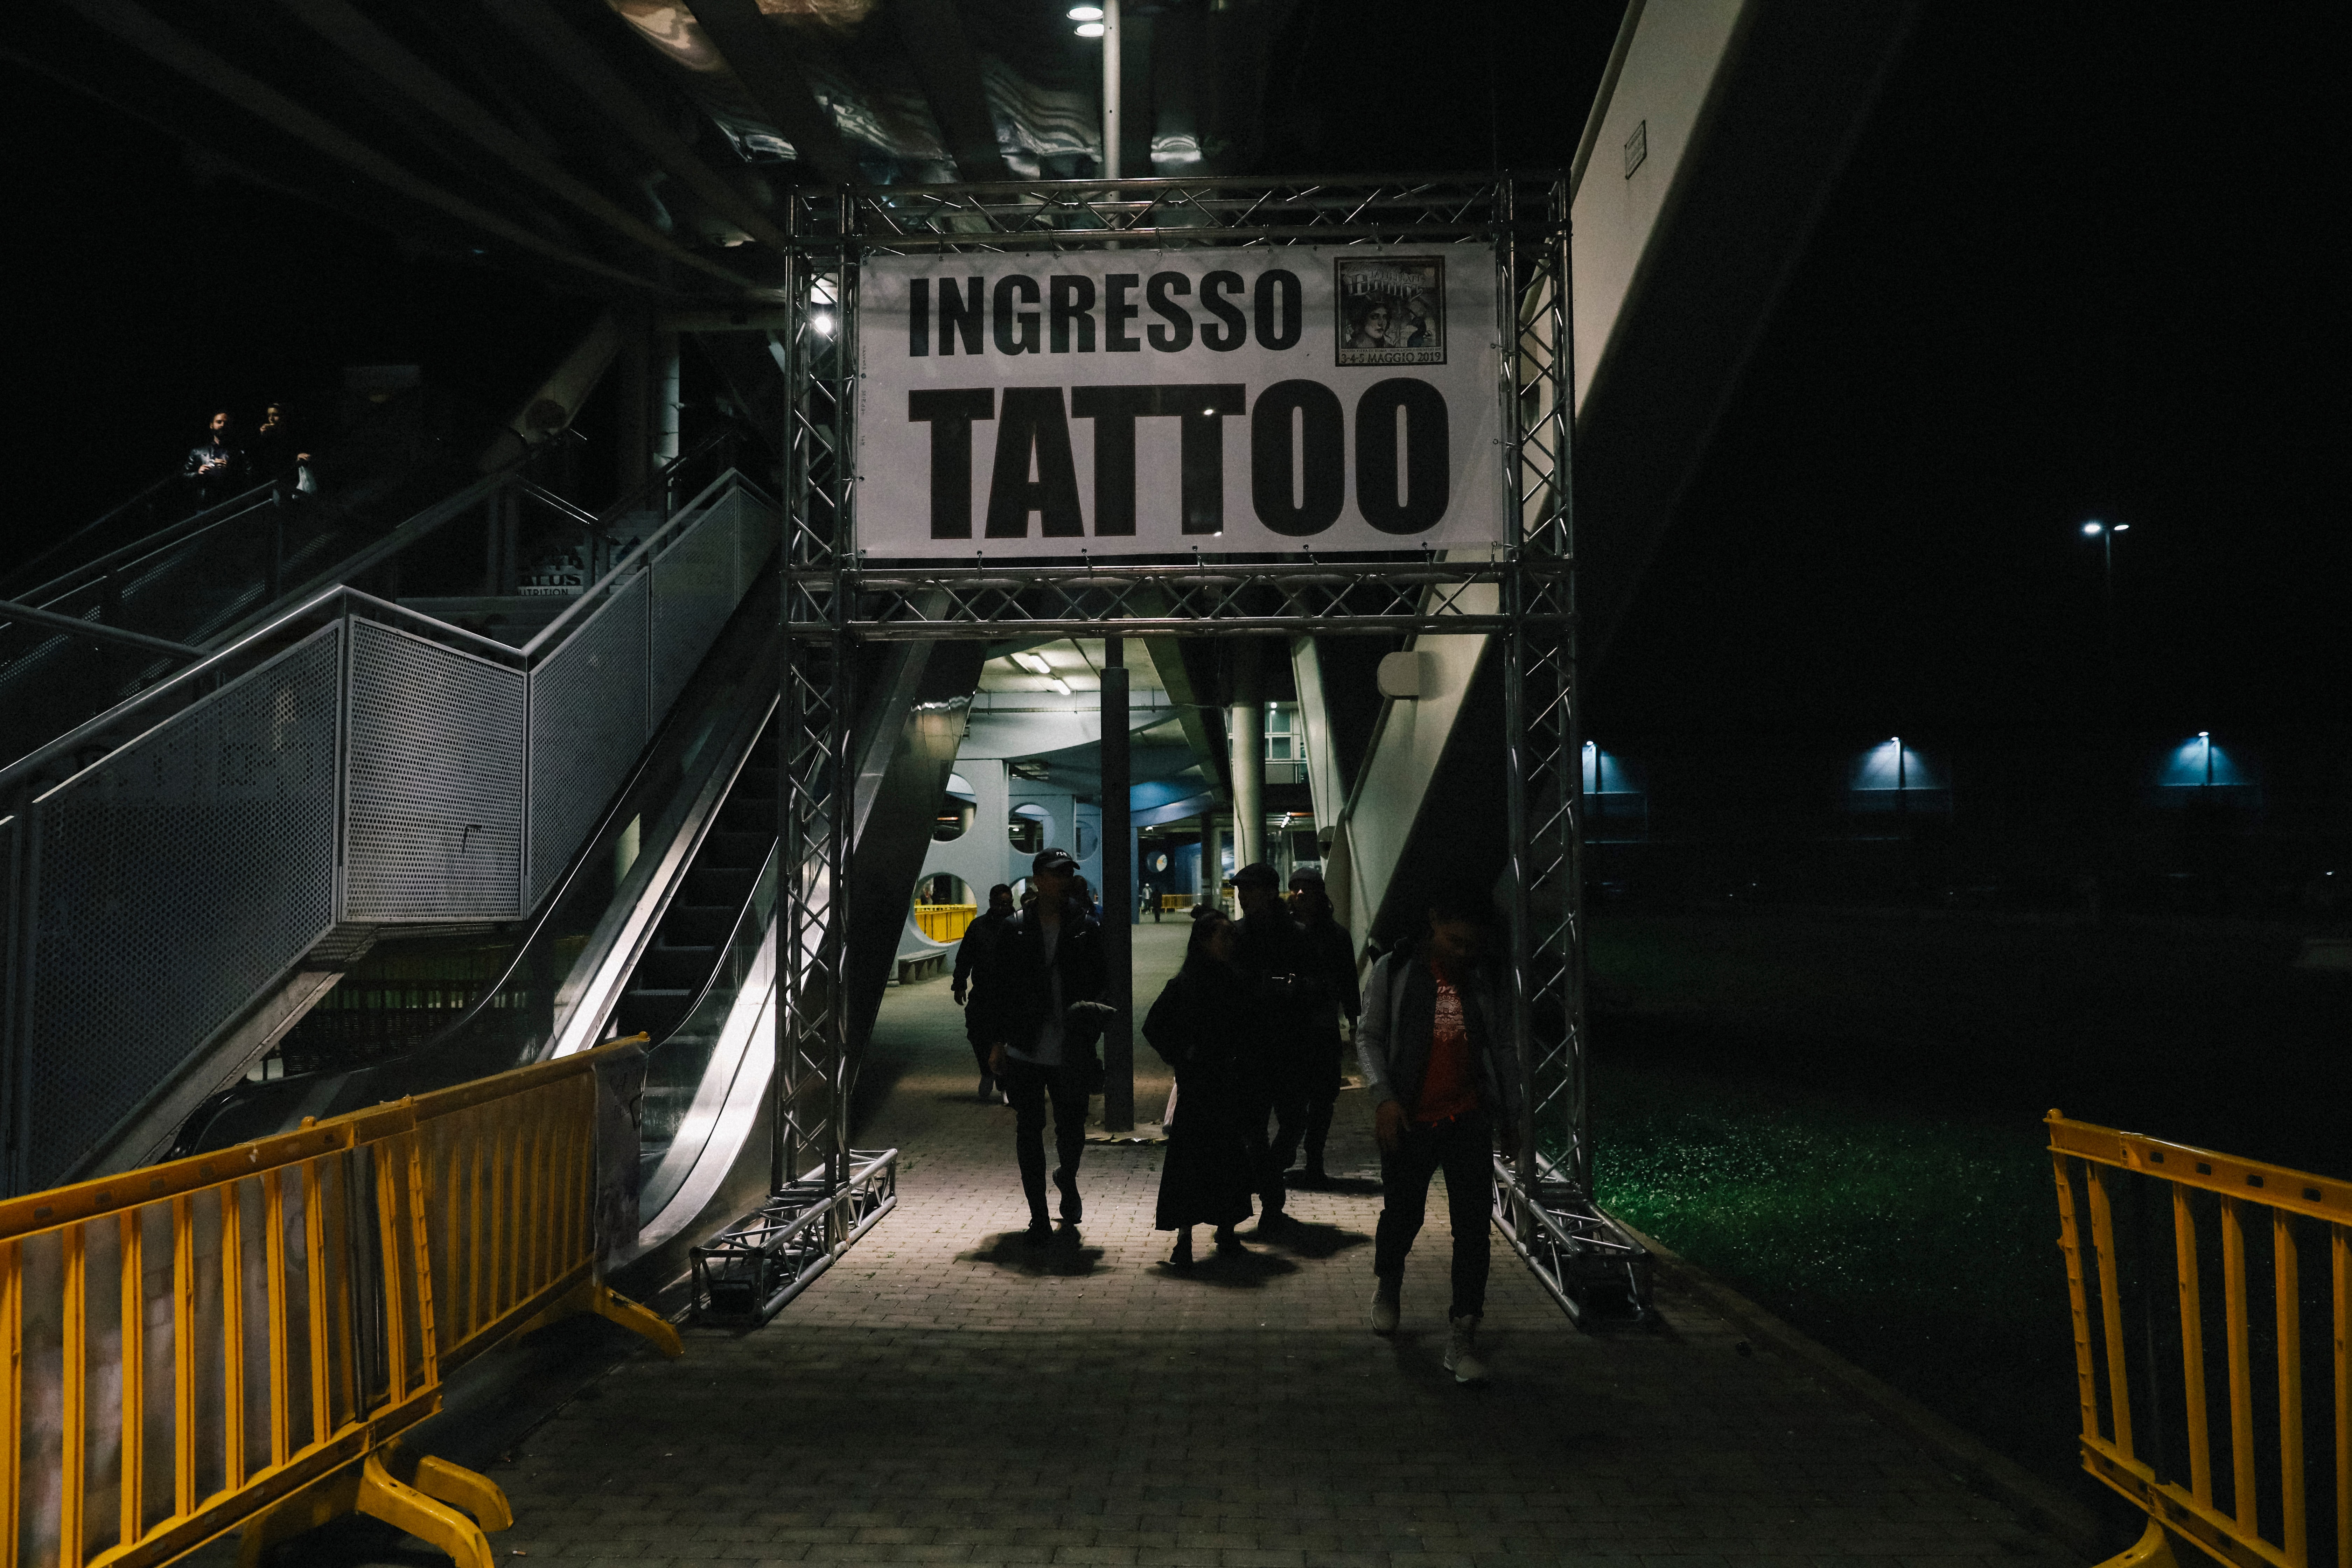 「參賽是與自己的競爭」HYPEBEAST 專訪台灣刺青師 Chris Liang